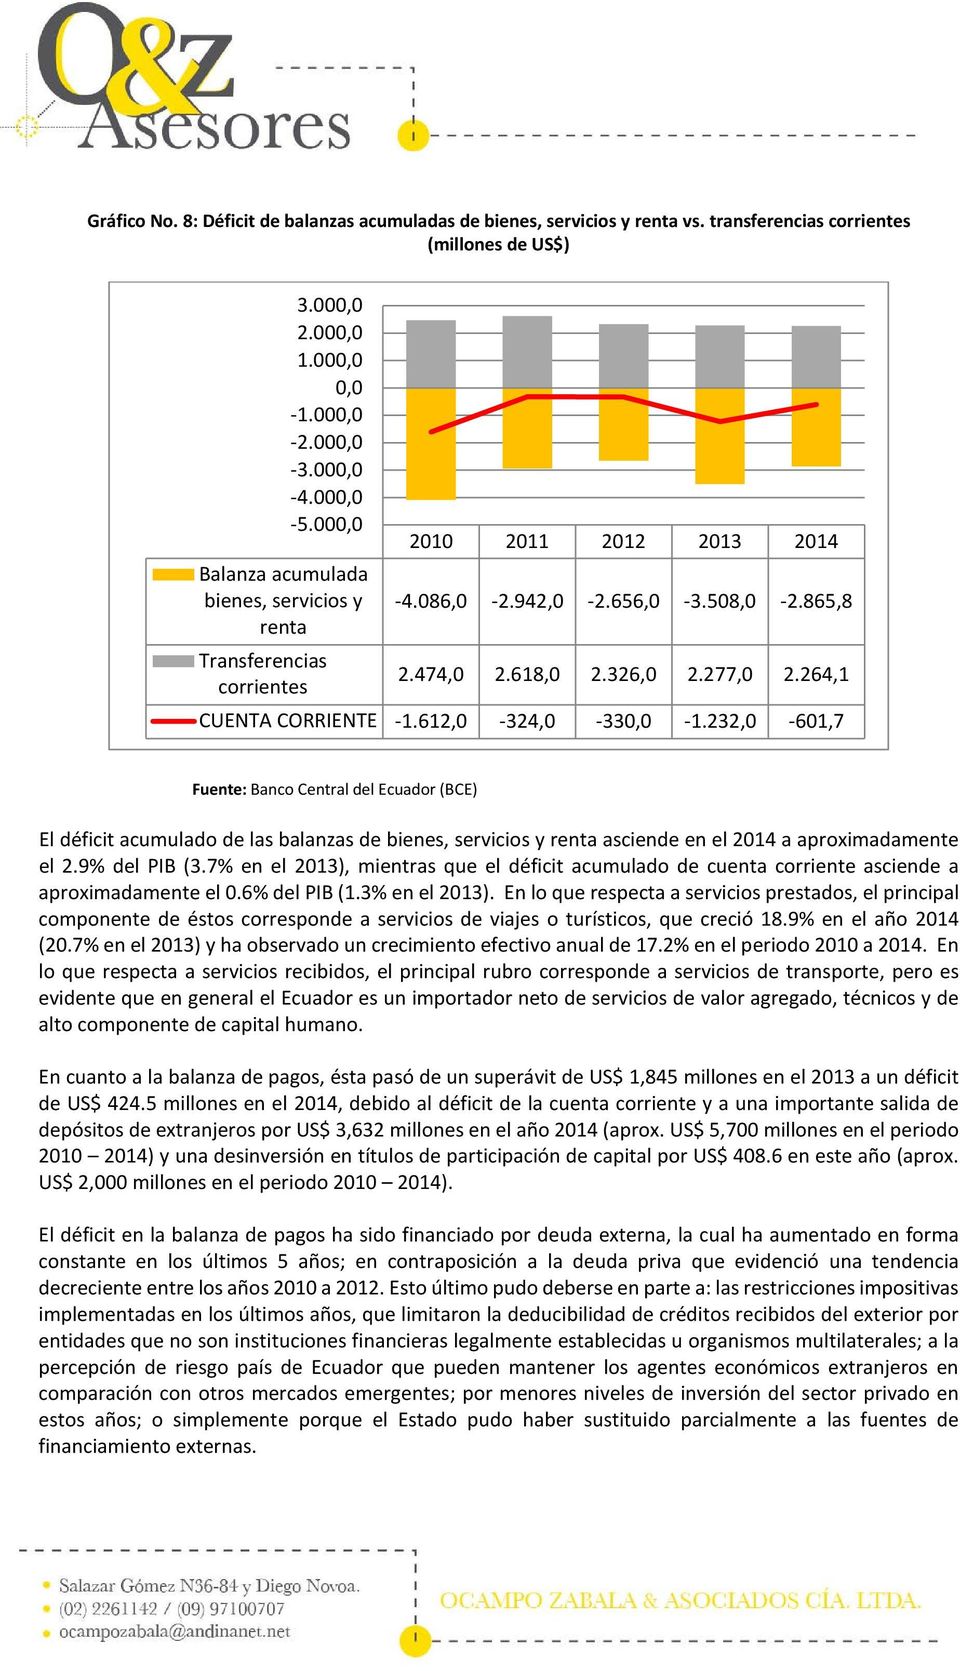 232,0-601,7 El déficit acumulado de las balanzas de bienes, servicios y renta asciende en el 2014 a aproximadamente el 2.9% del PIB (3.